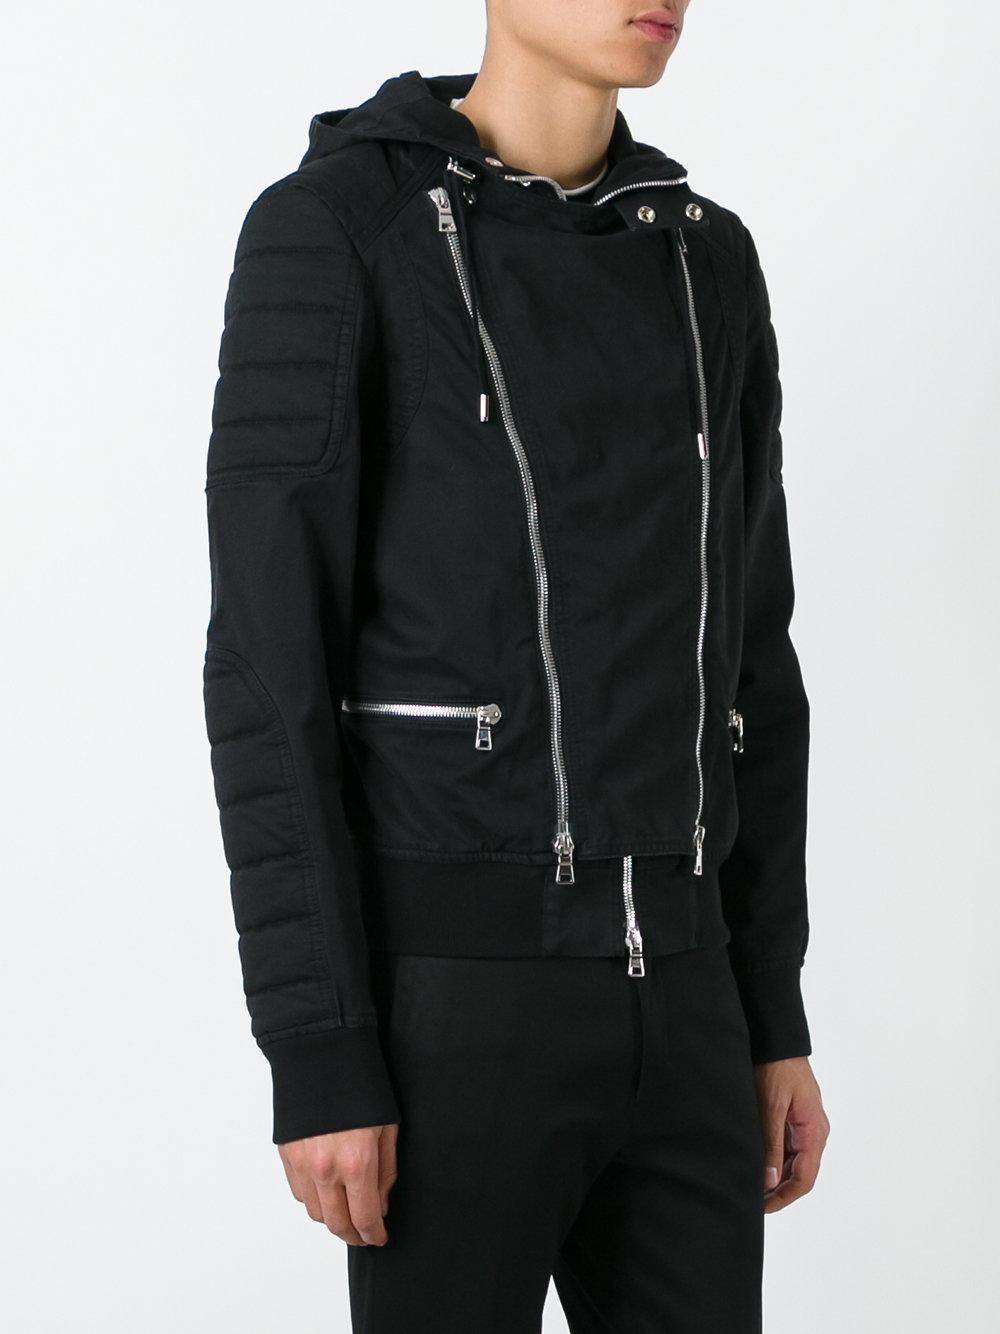 Lyst - Balmain Double Zip Jacket in Black for Men